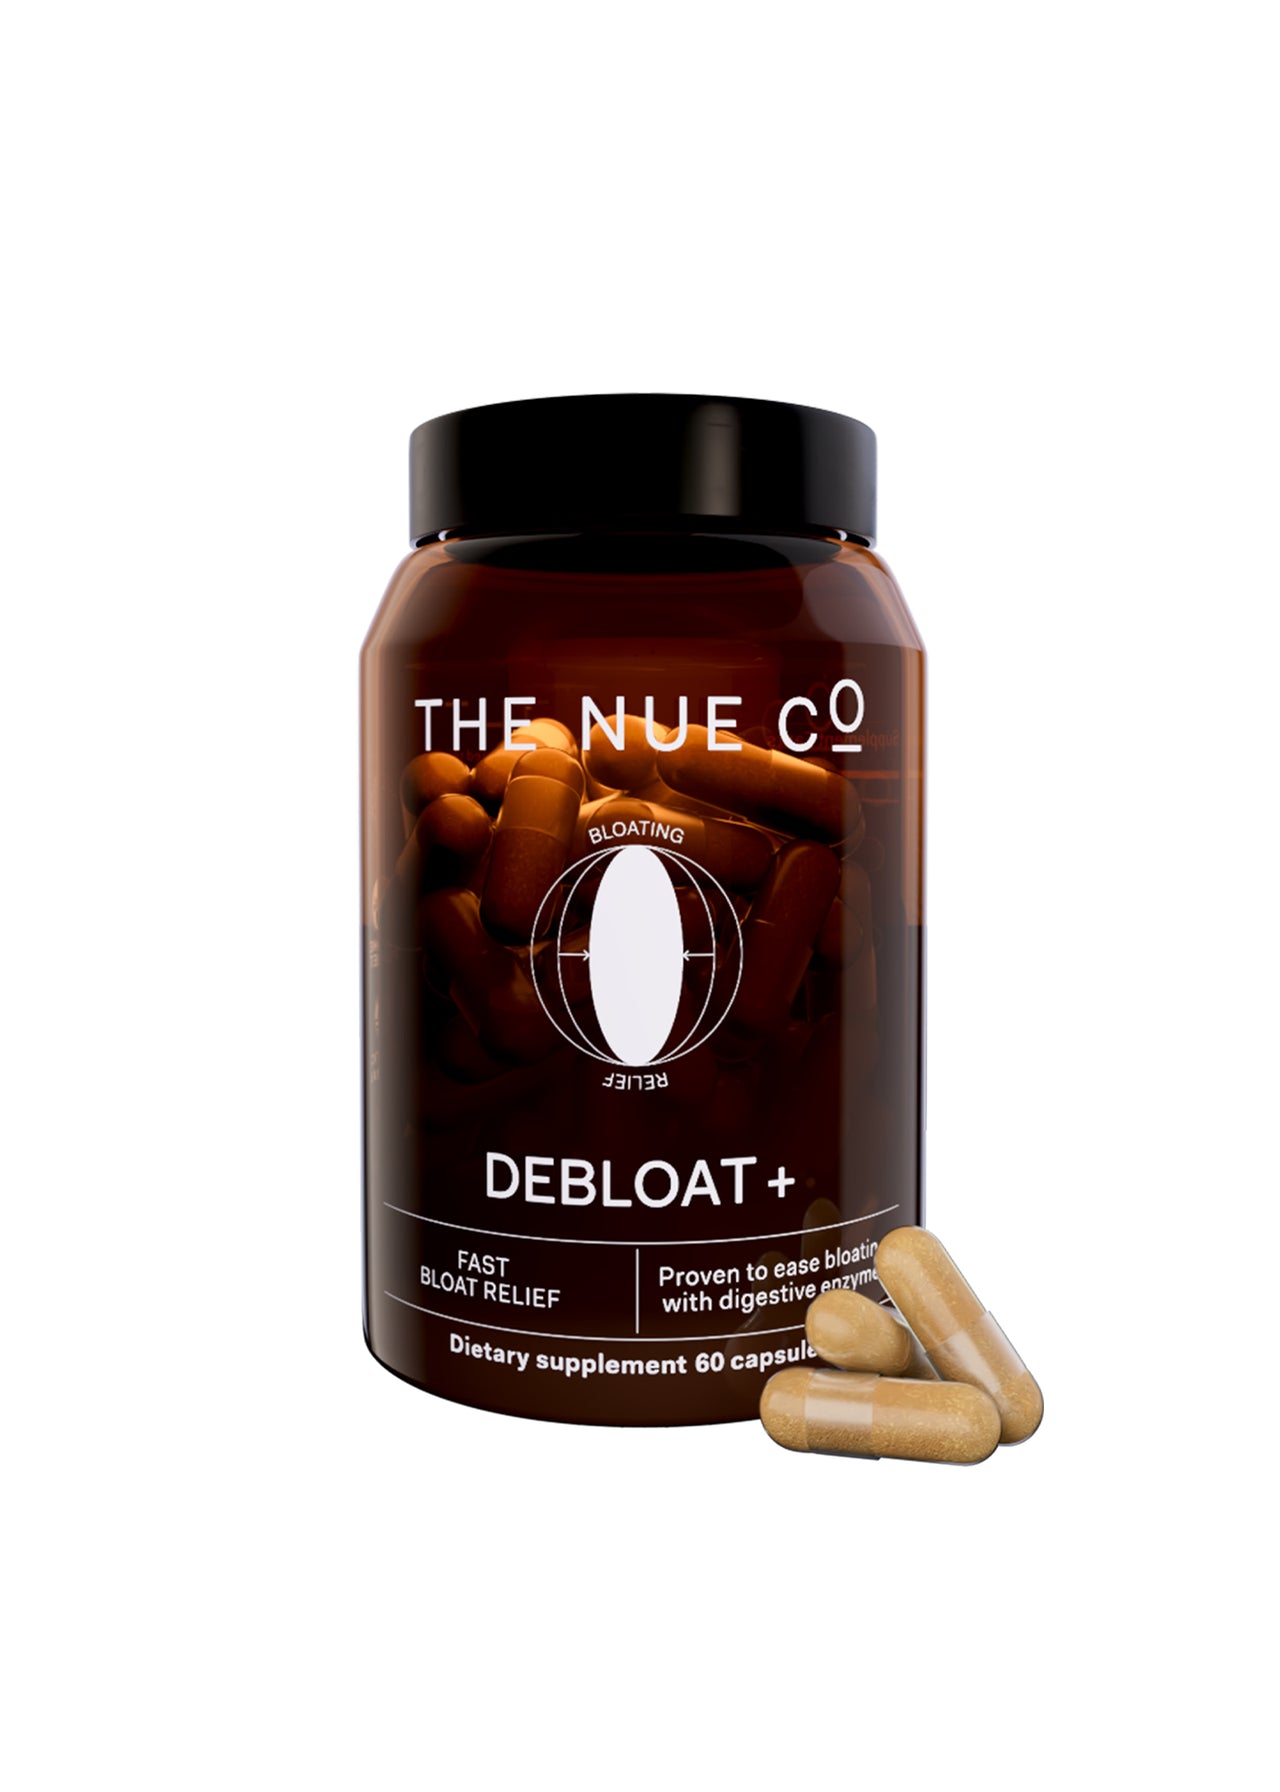 THE NUE CO Debloat + Supplement